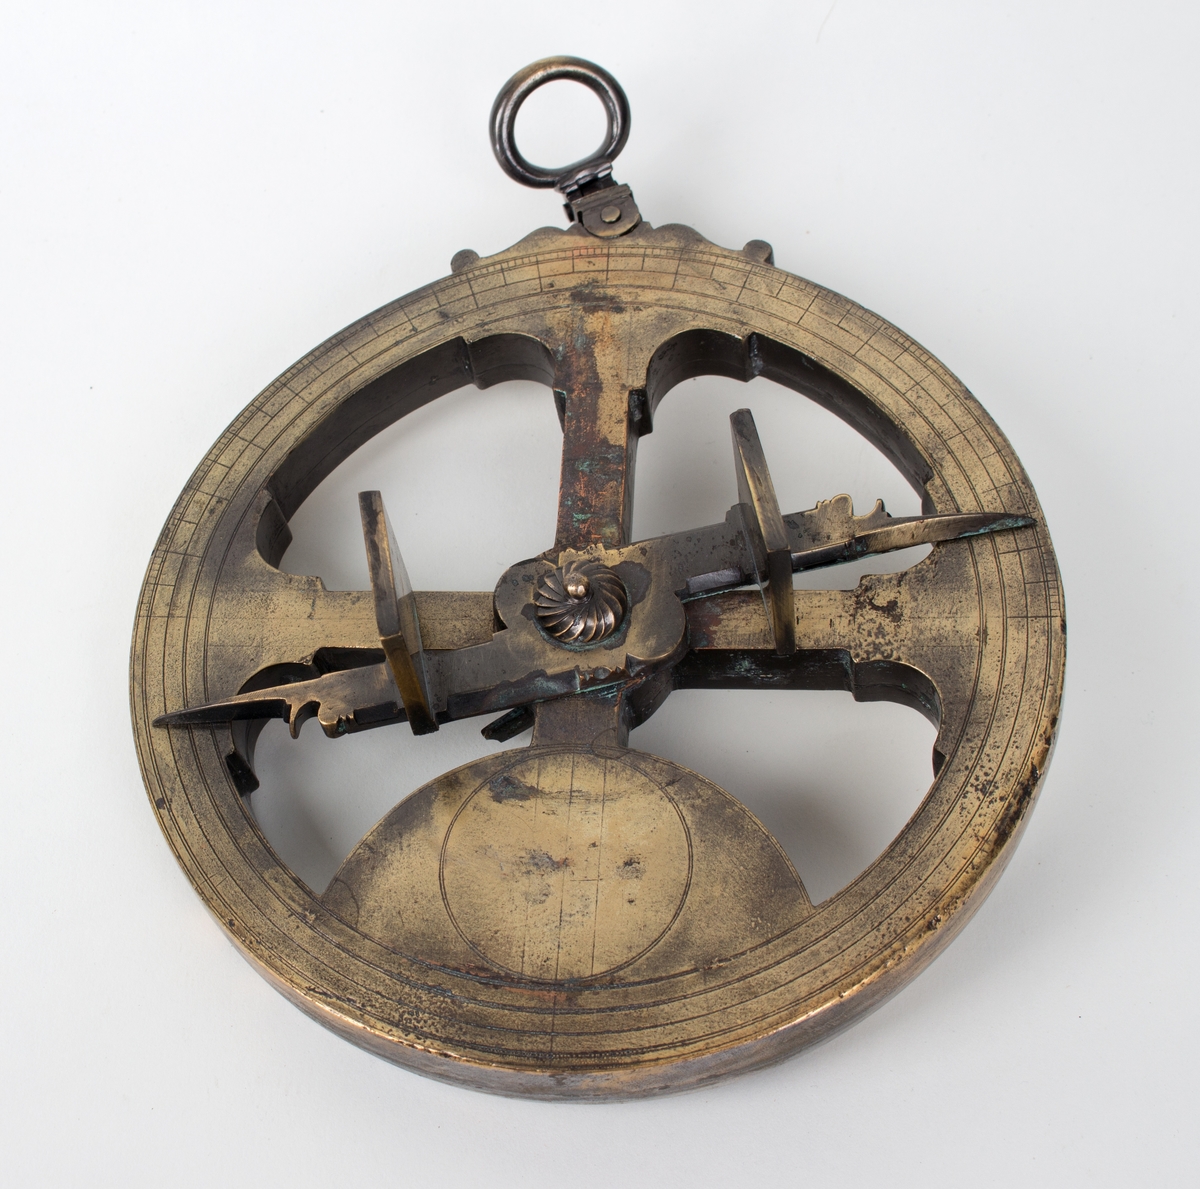 Sirkelformet astrolabium i messing, med skive som kan skyves på for å stille det inn. Originalen er utstilt ved The Science Museum i London.